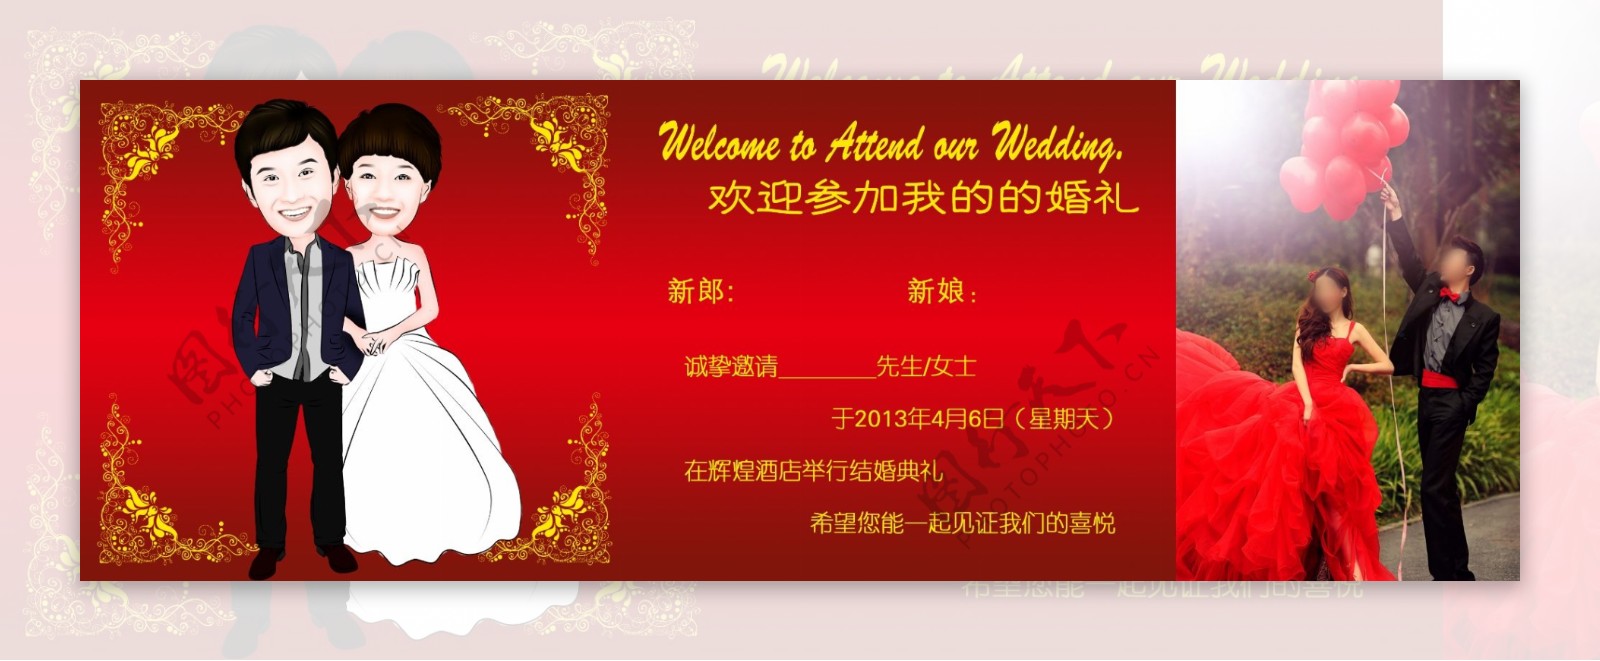 婚礼请假中国红图片